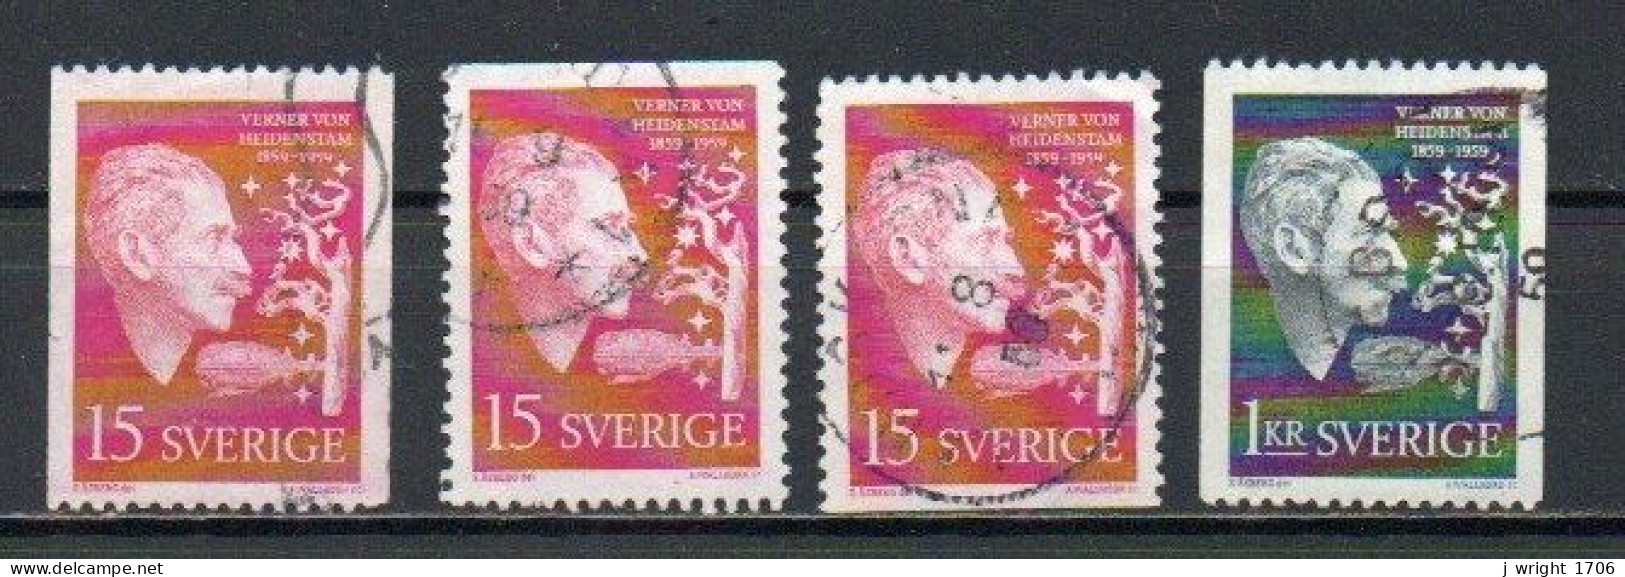 Sweden, 1959, Verner Von Heidenstam, Set, USED - Oblitérés